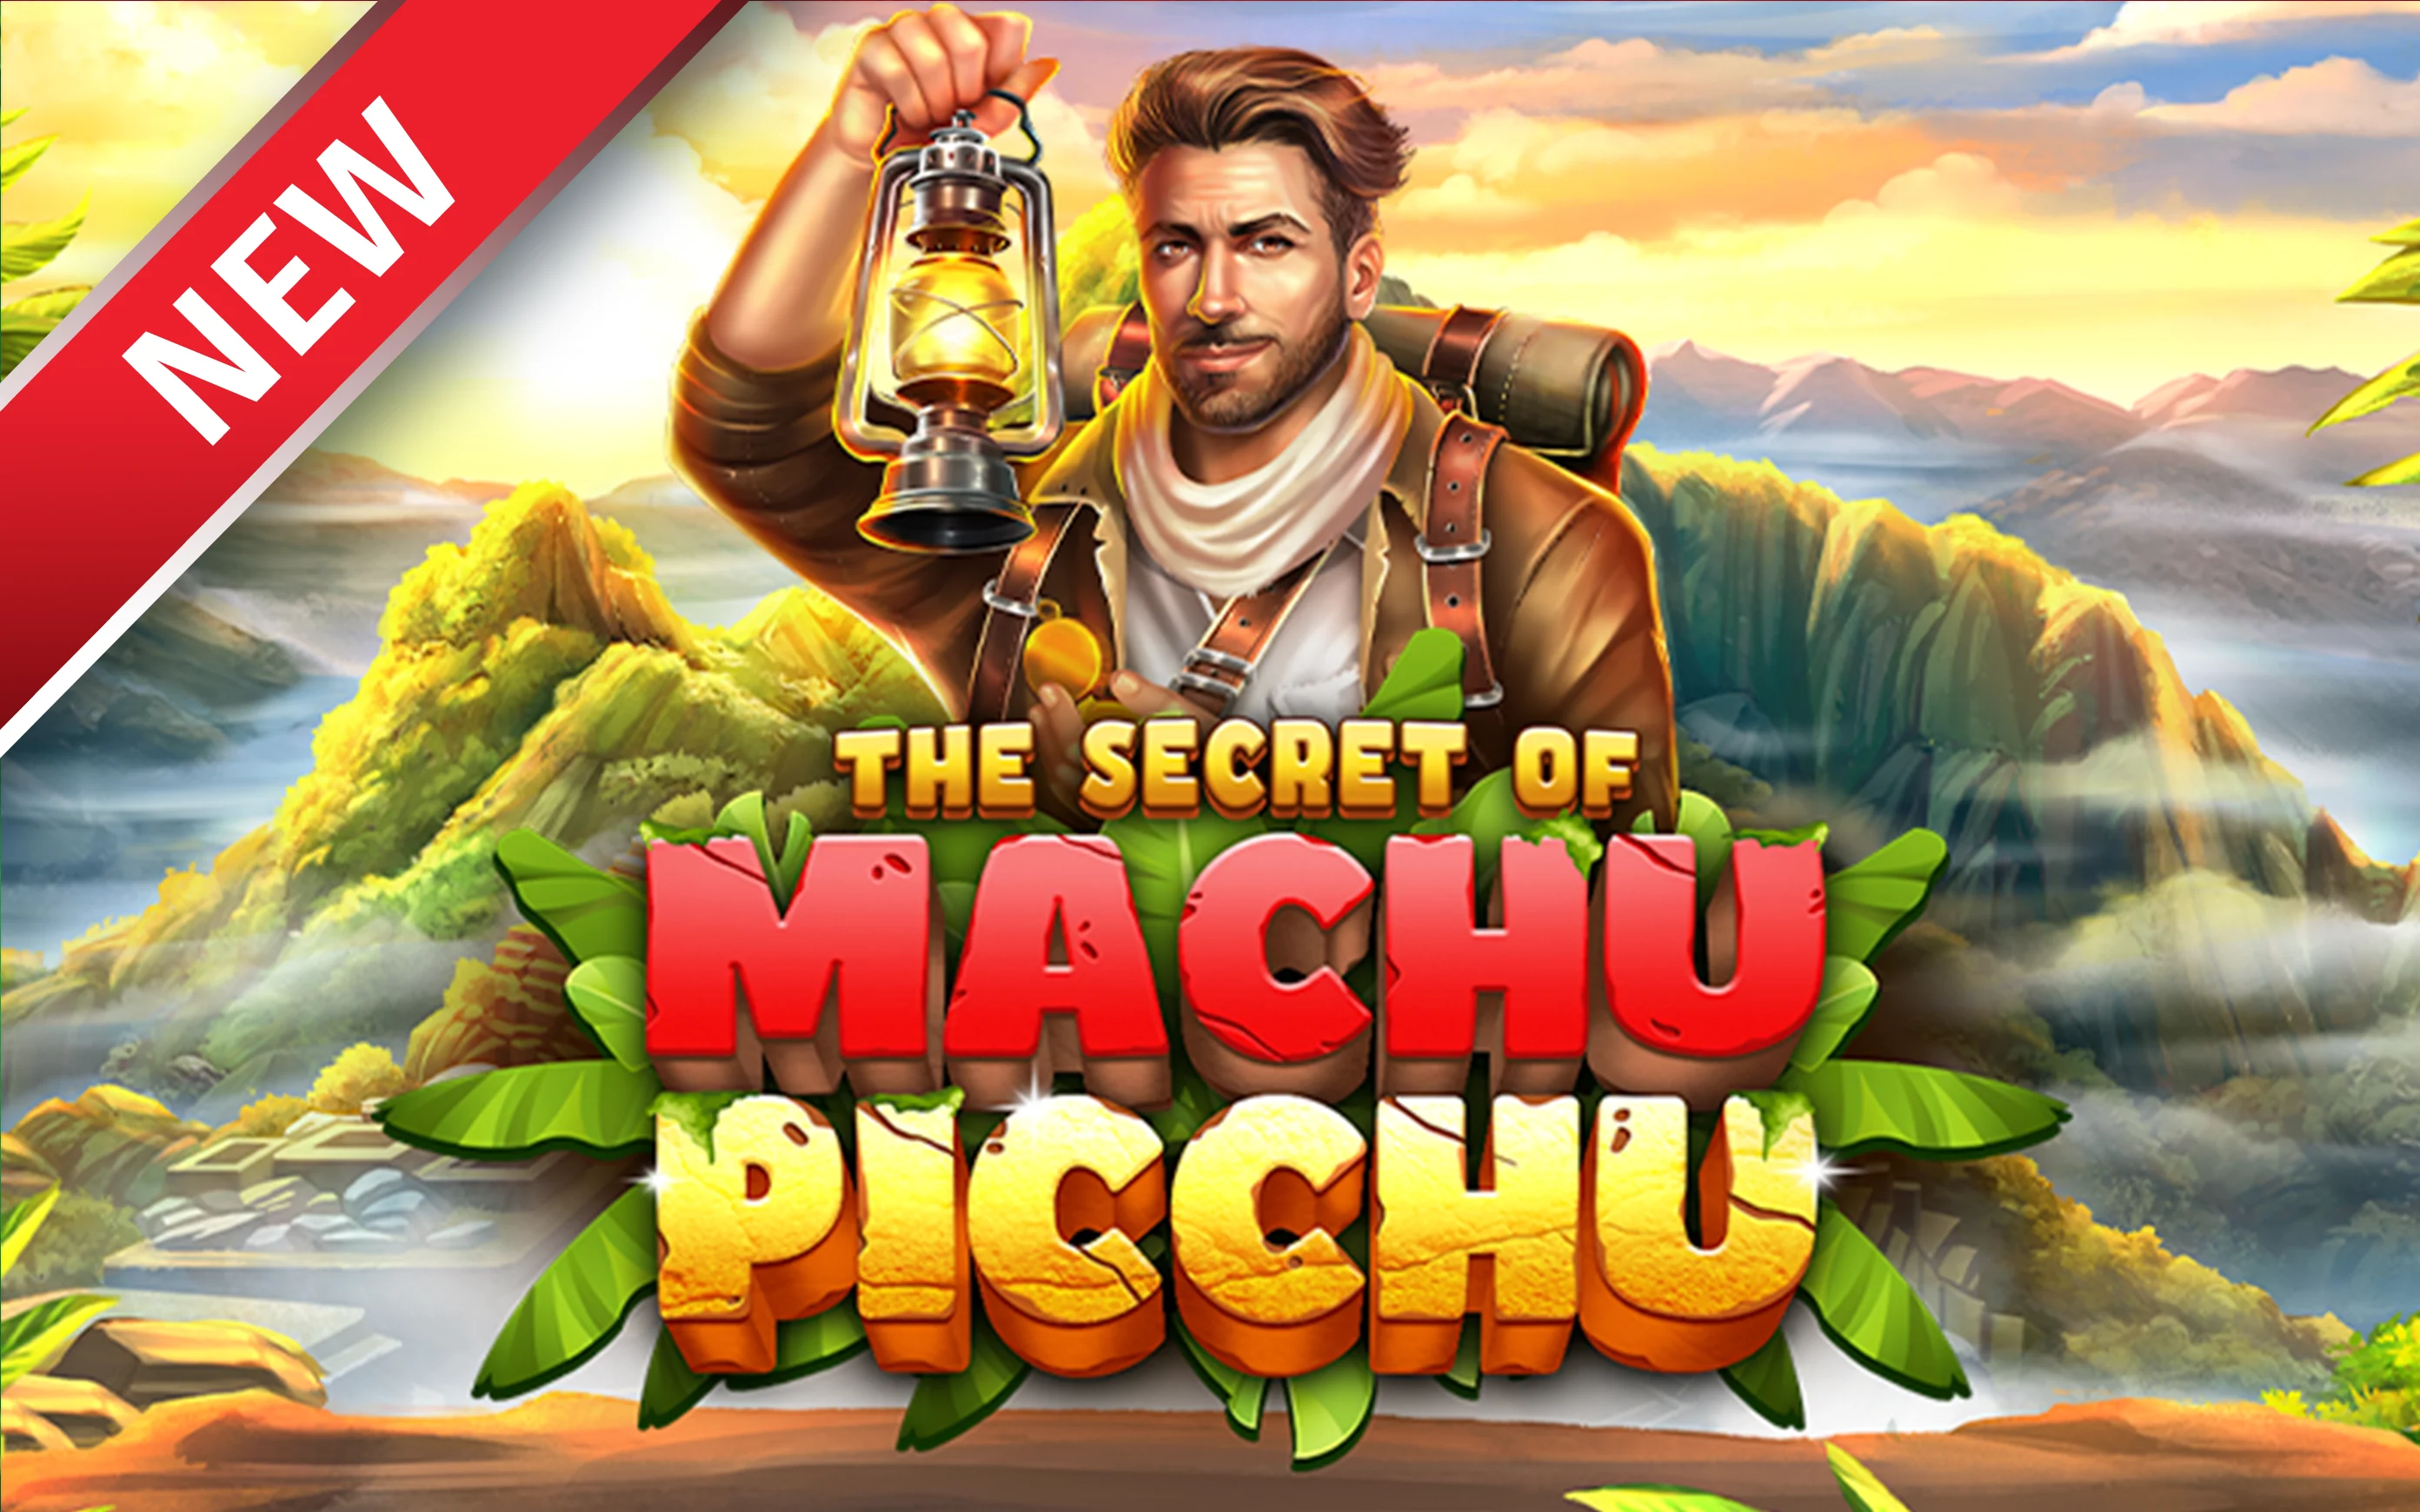 Play The Secret of Machu Picchu on StarcasinoBE online casino